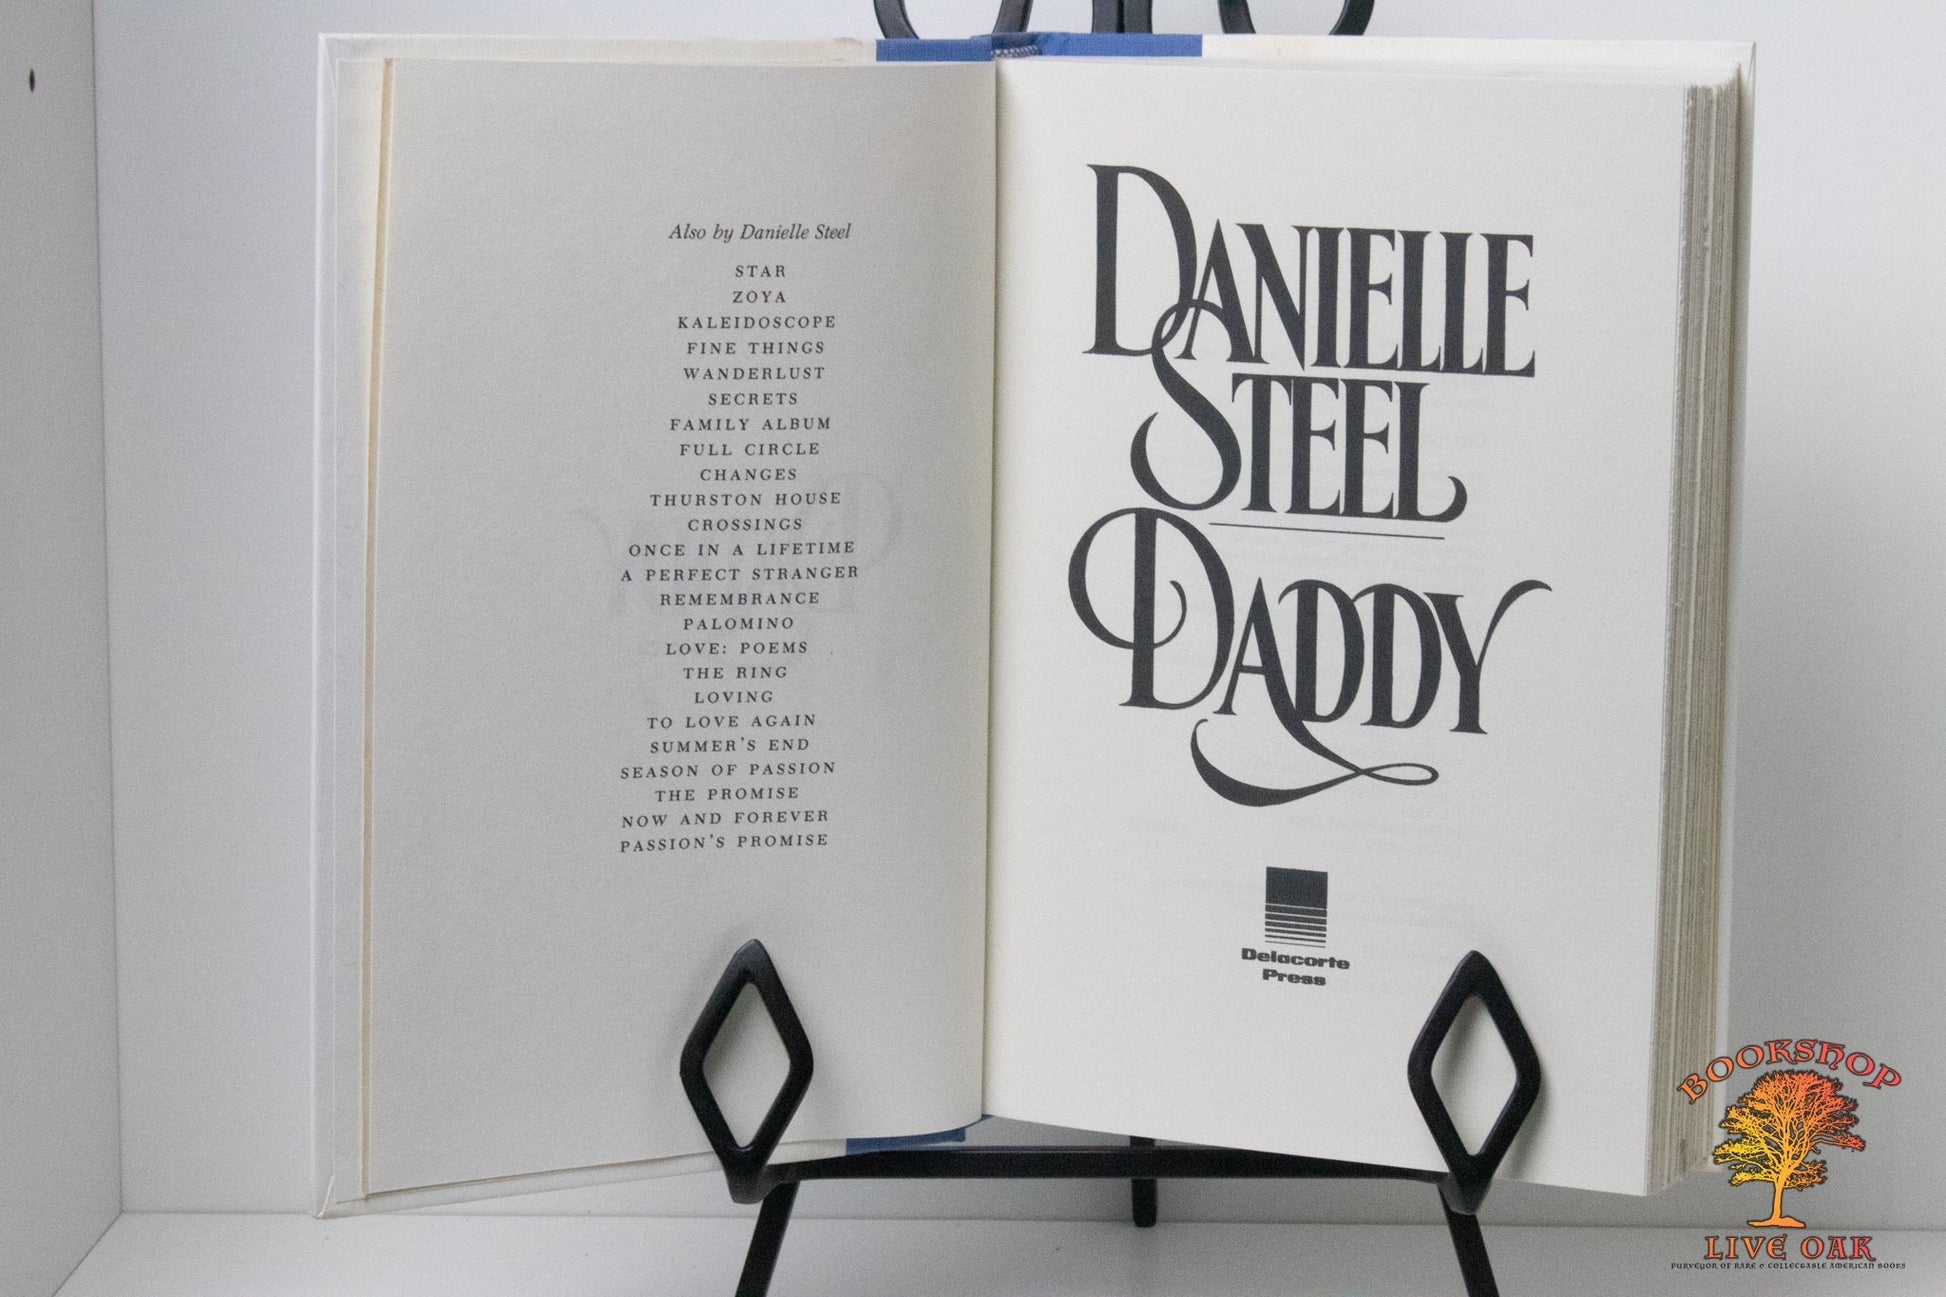 Daddy by Danielle Steel